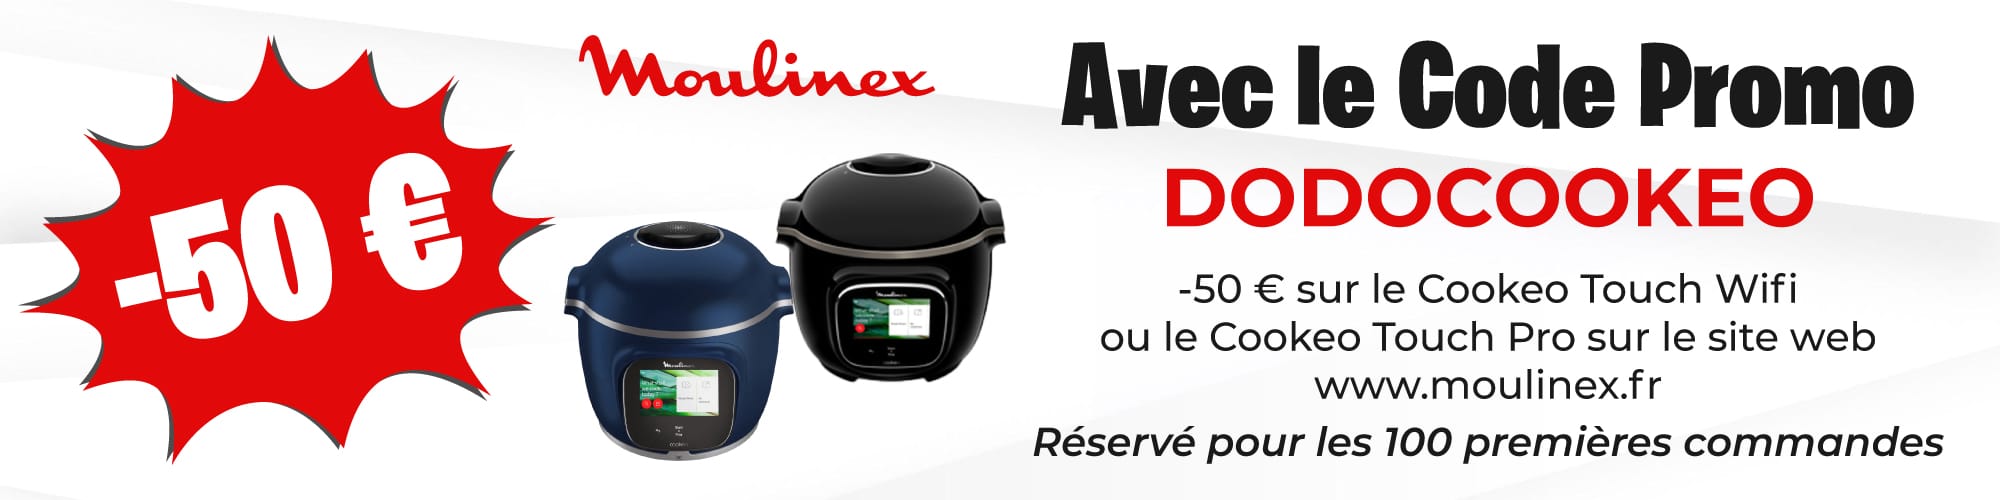 50 € offert sur le Cookeo Touch Wifi et le Cookeo Touch Pro avec le code DODOCOOKEO sur le site de Moulinex.